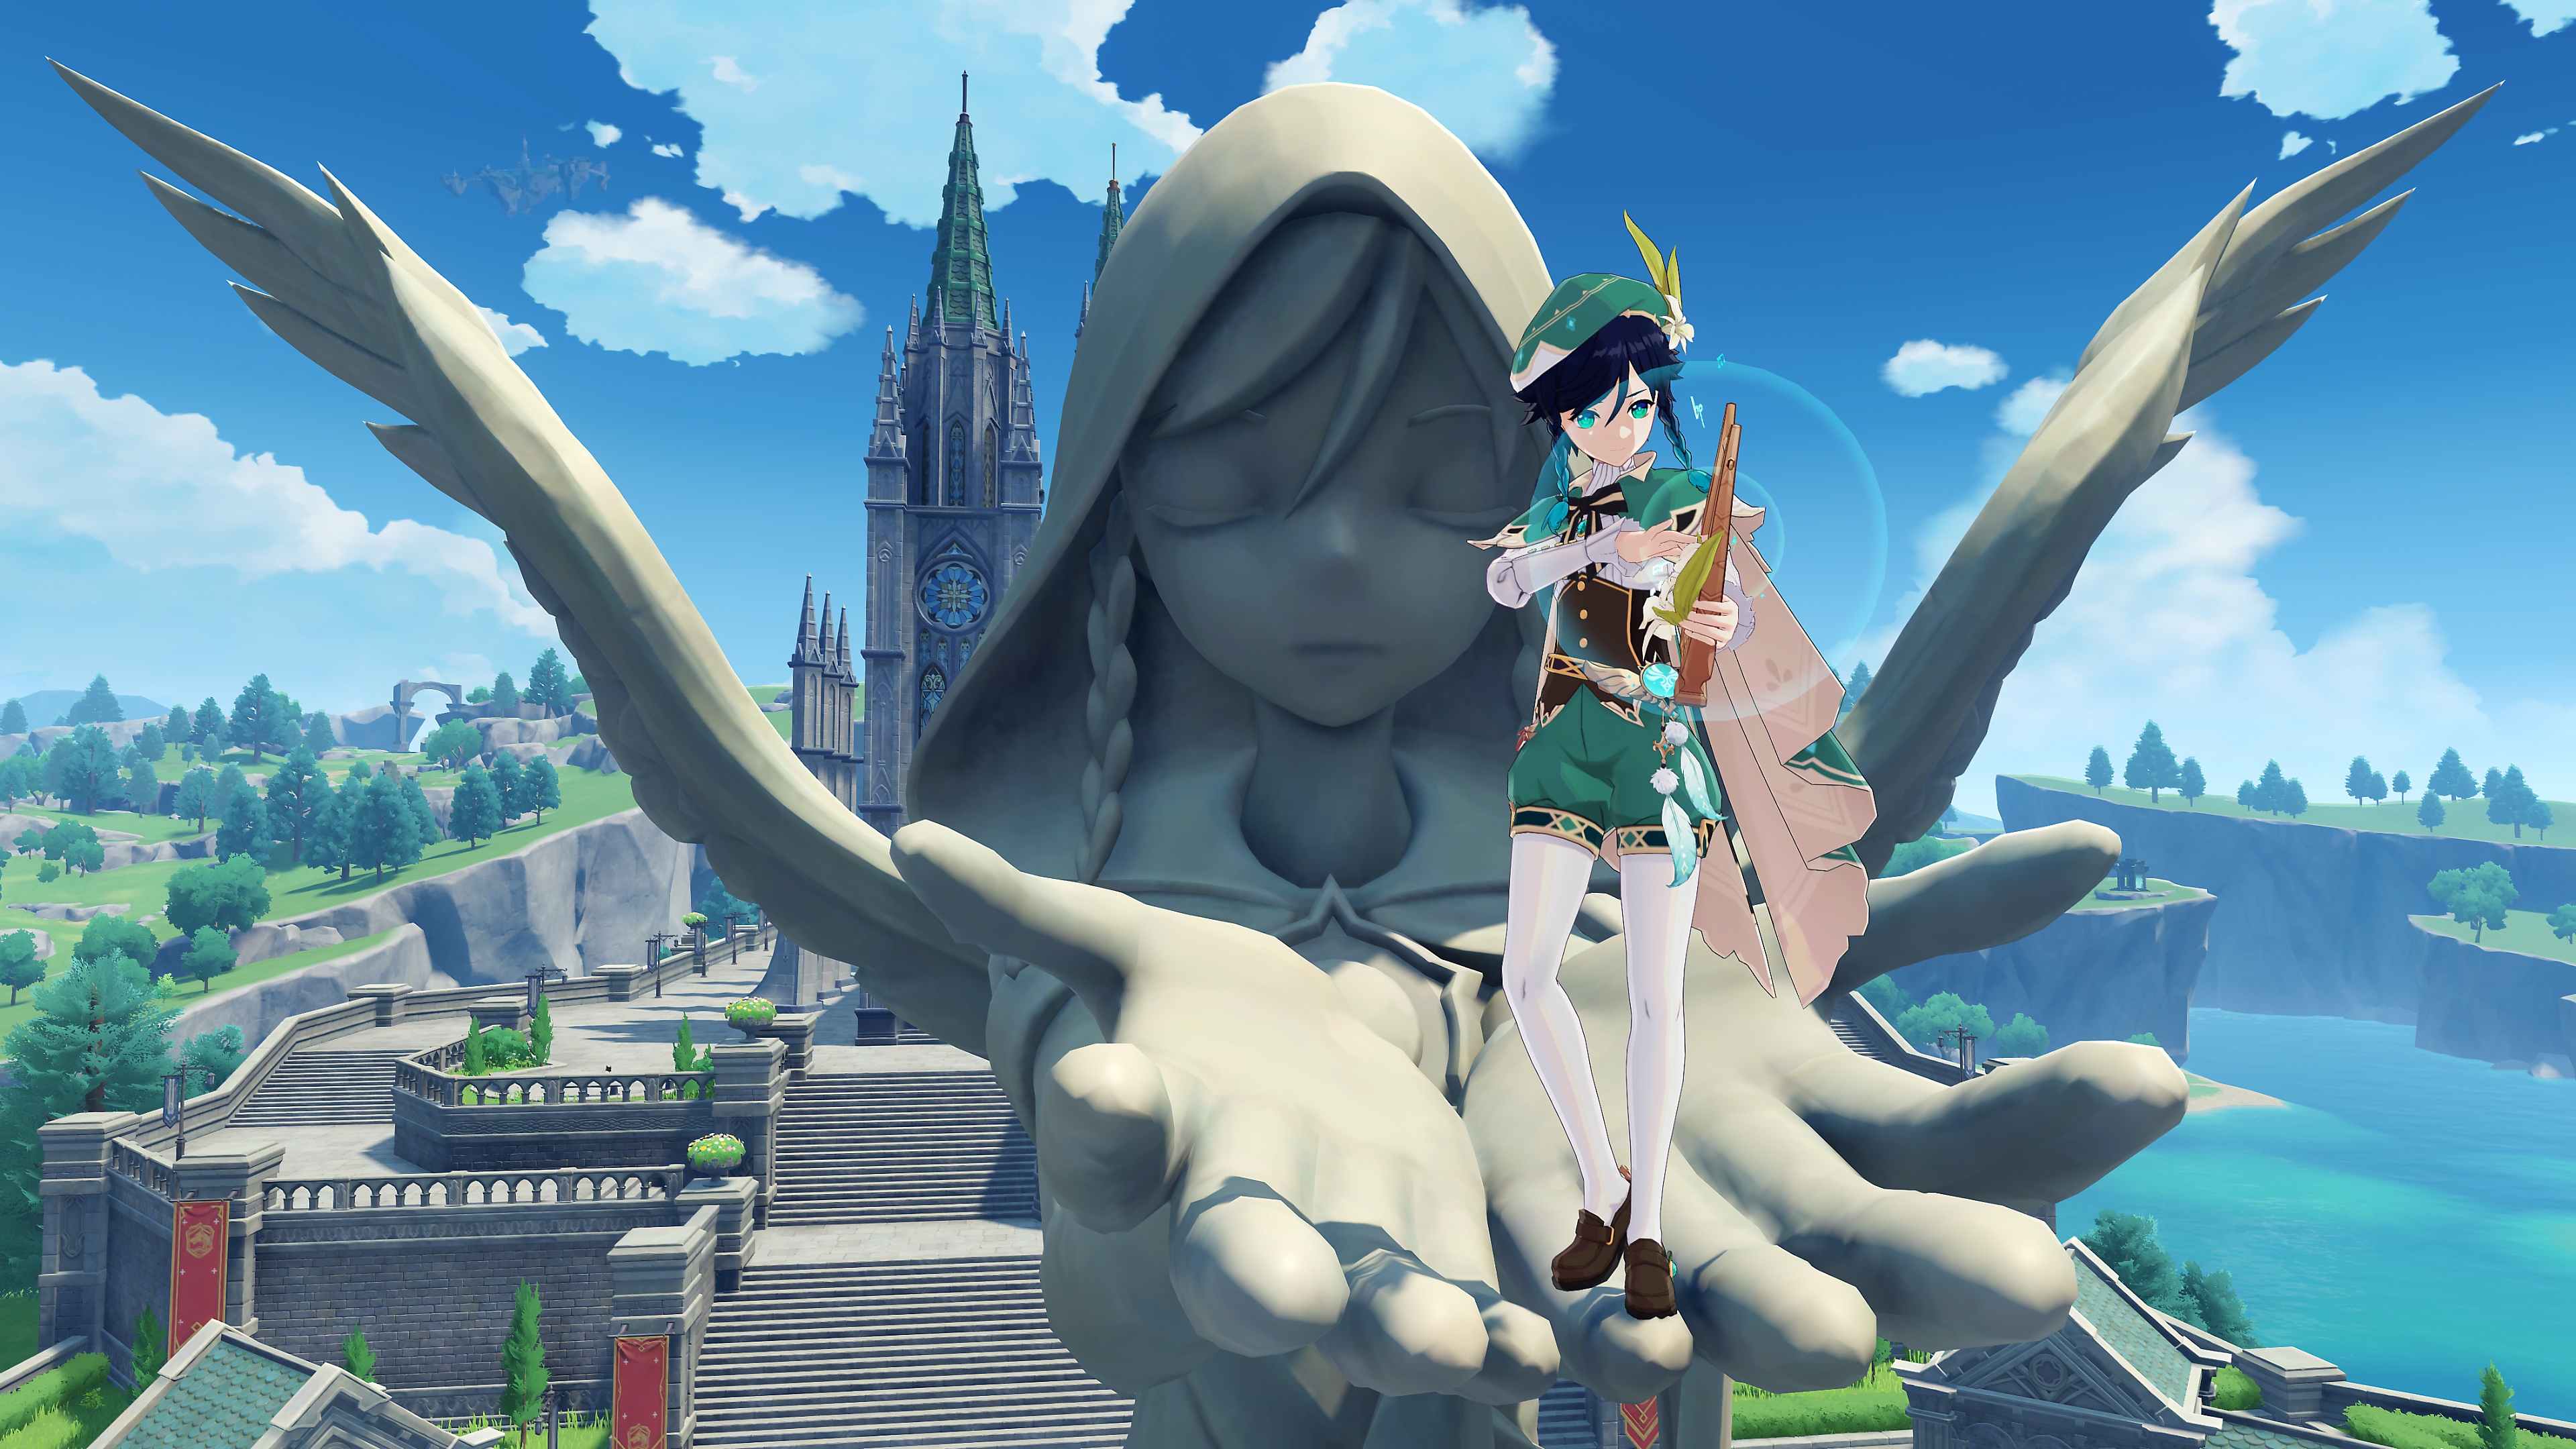 Impacto de GenShin: Captura de pantalla de Actualización 2.6 que muestra a un personaje parado en las manos de una gran estatua de piedra